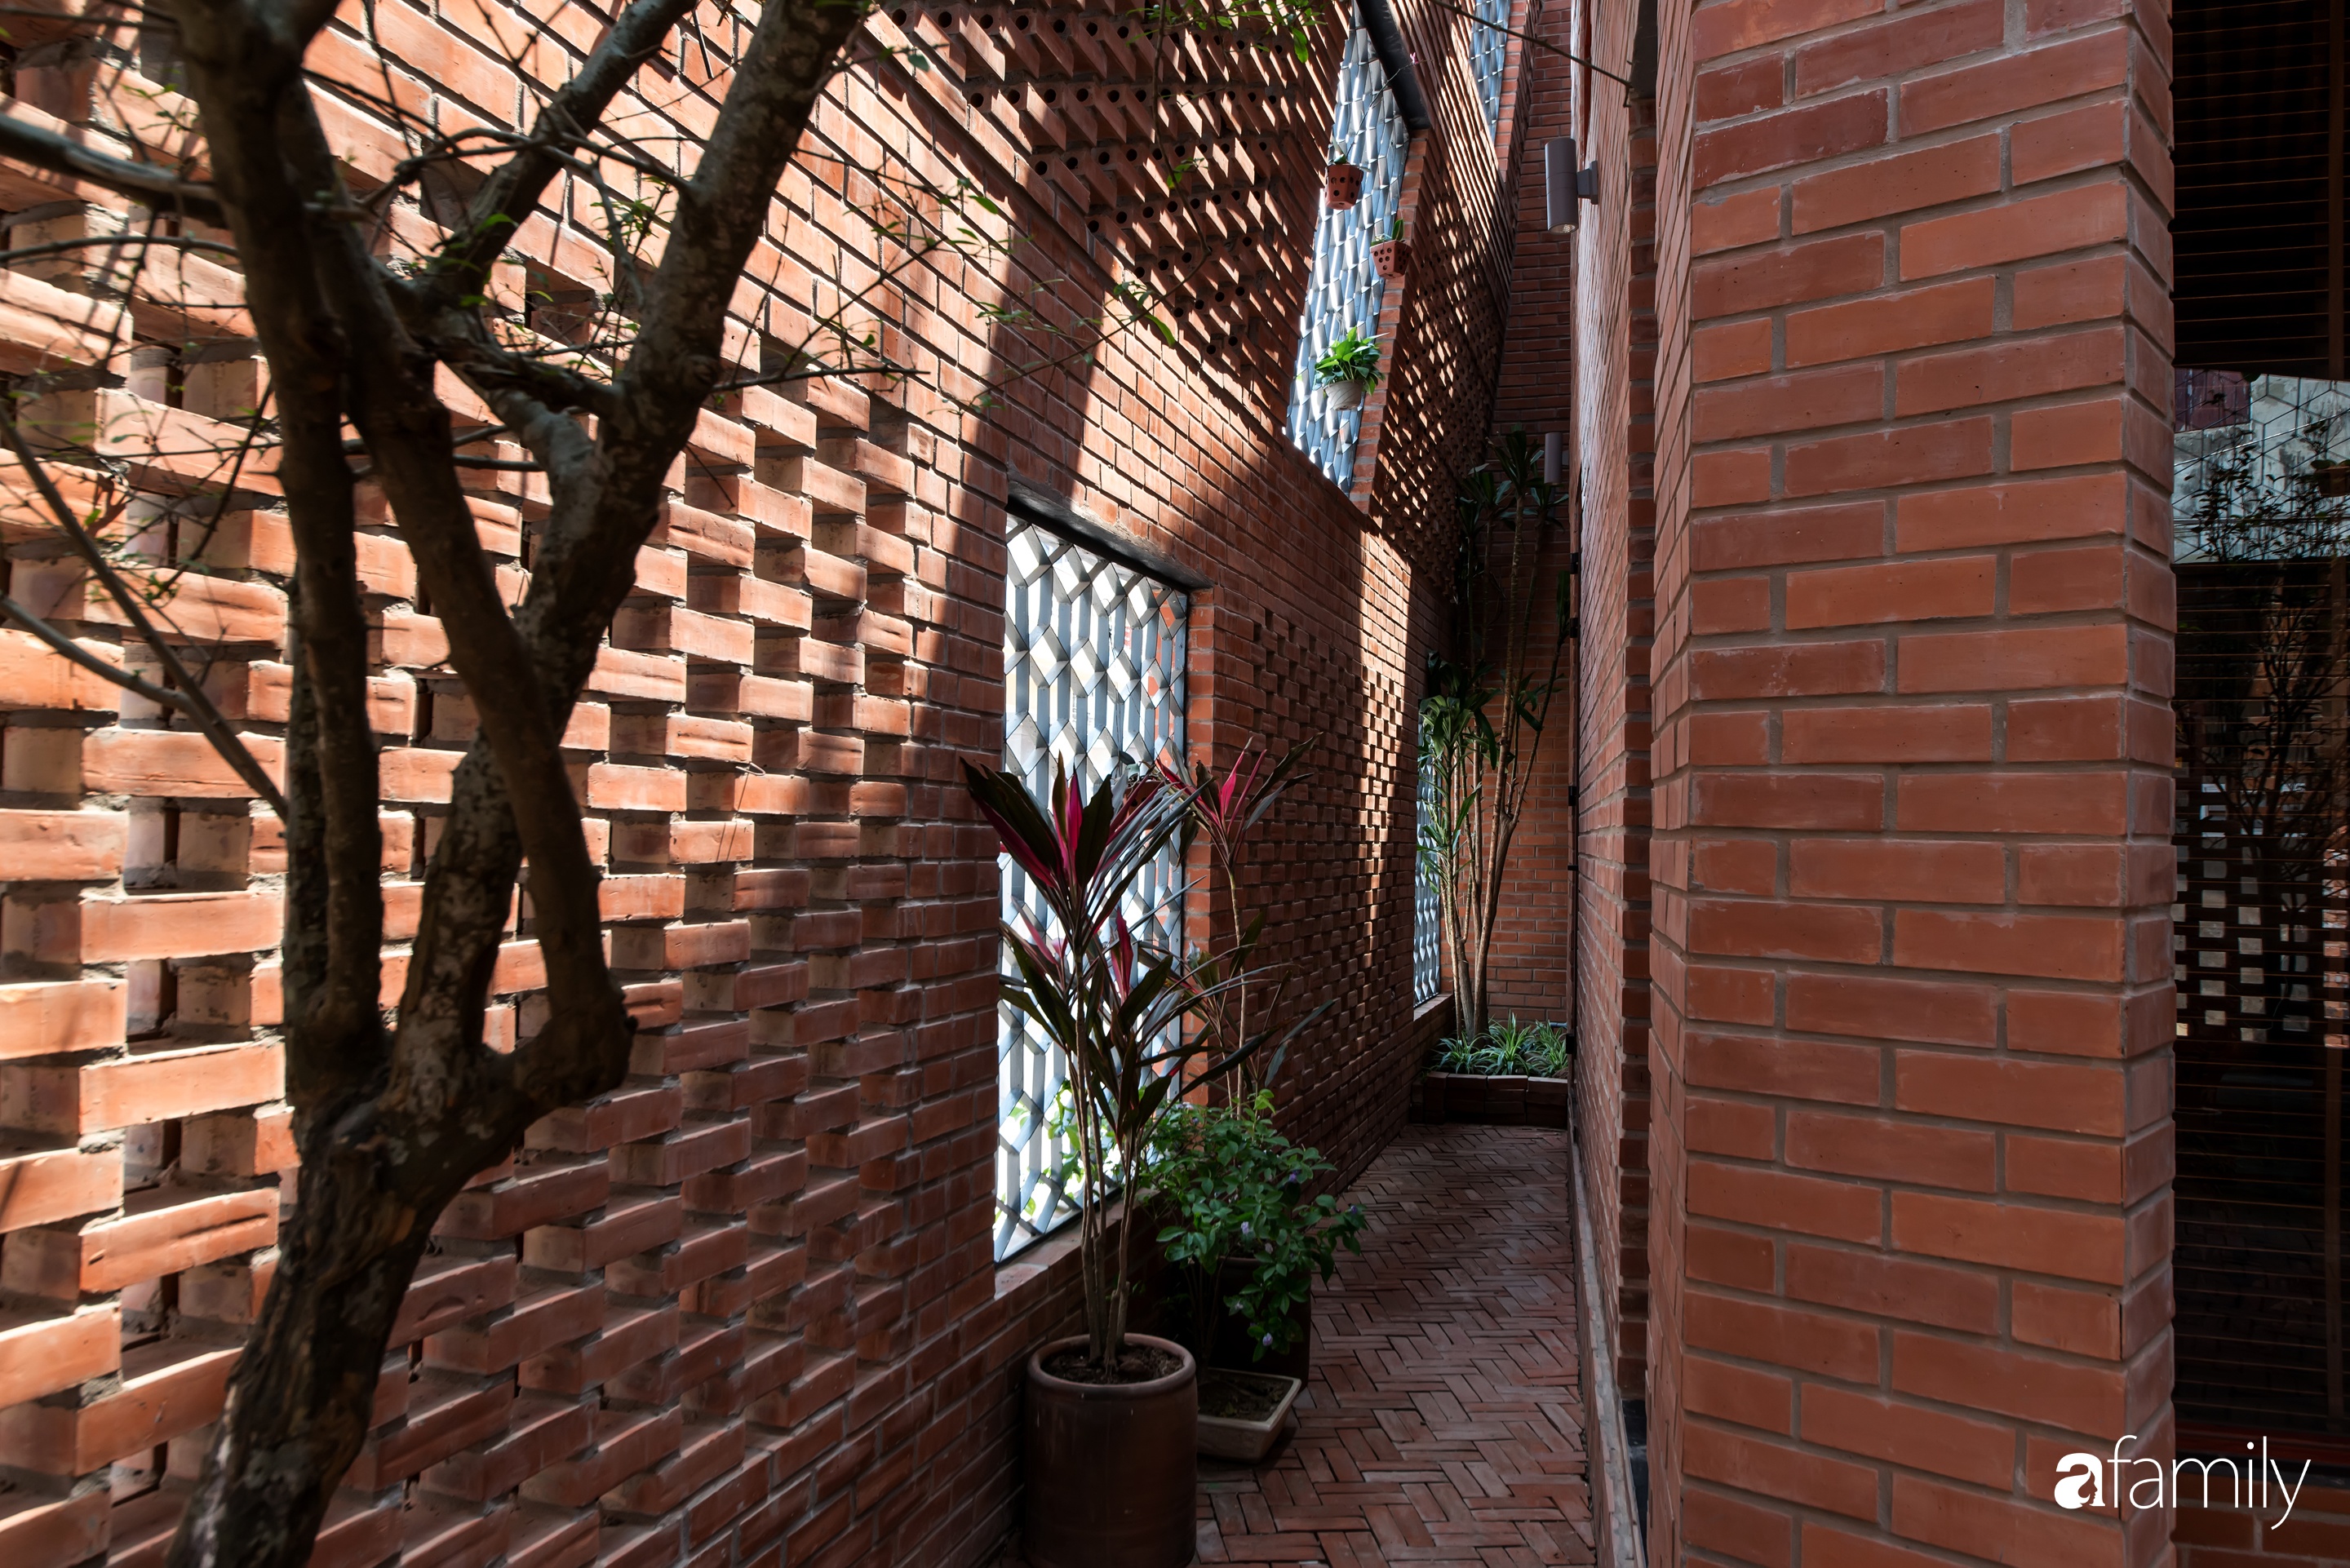 Ngôi nhà với hai lớp tường bằng gạch tạo điểm nhấn bằng những mảng xanh rau quả ở ngoại thành Hà Nội - Ảnh 5.